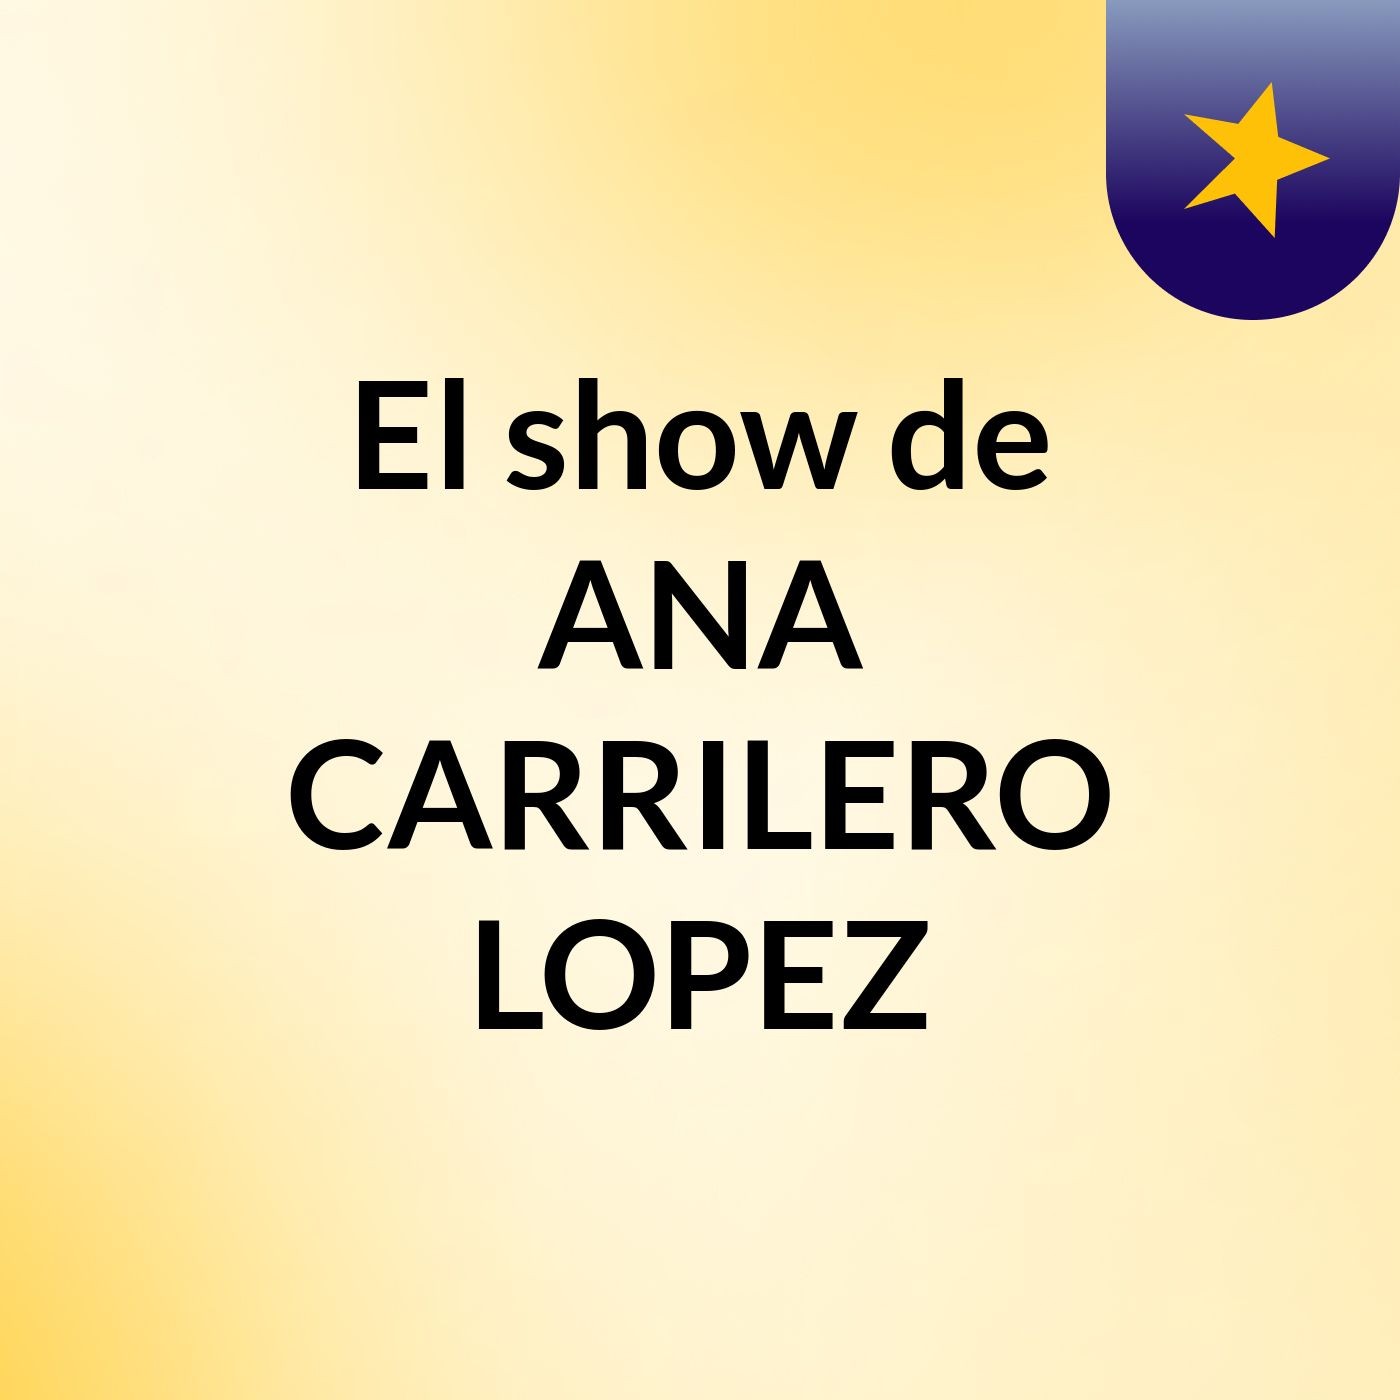 El show de ANA CARRILERO LOPEZ